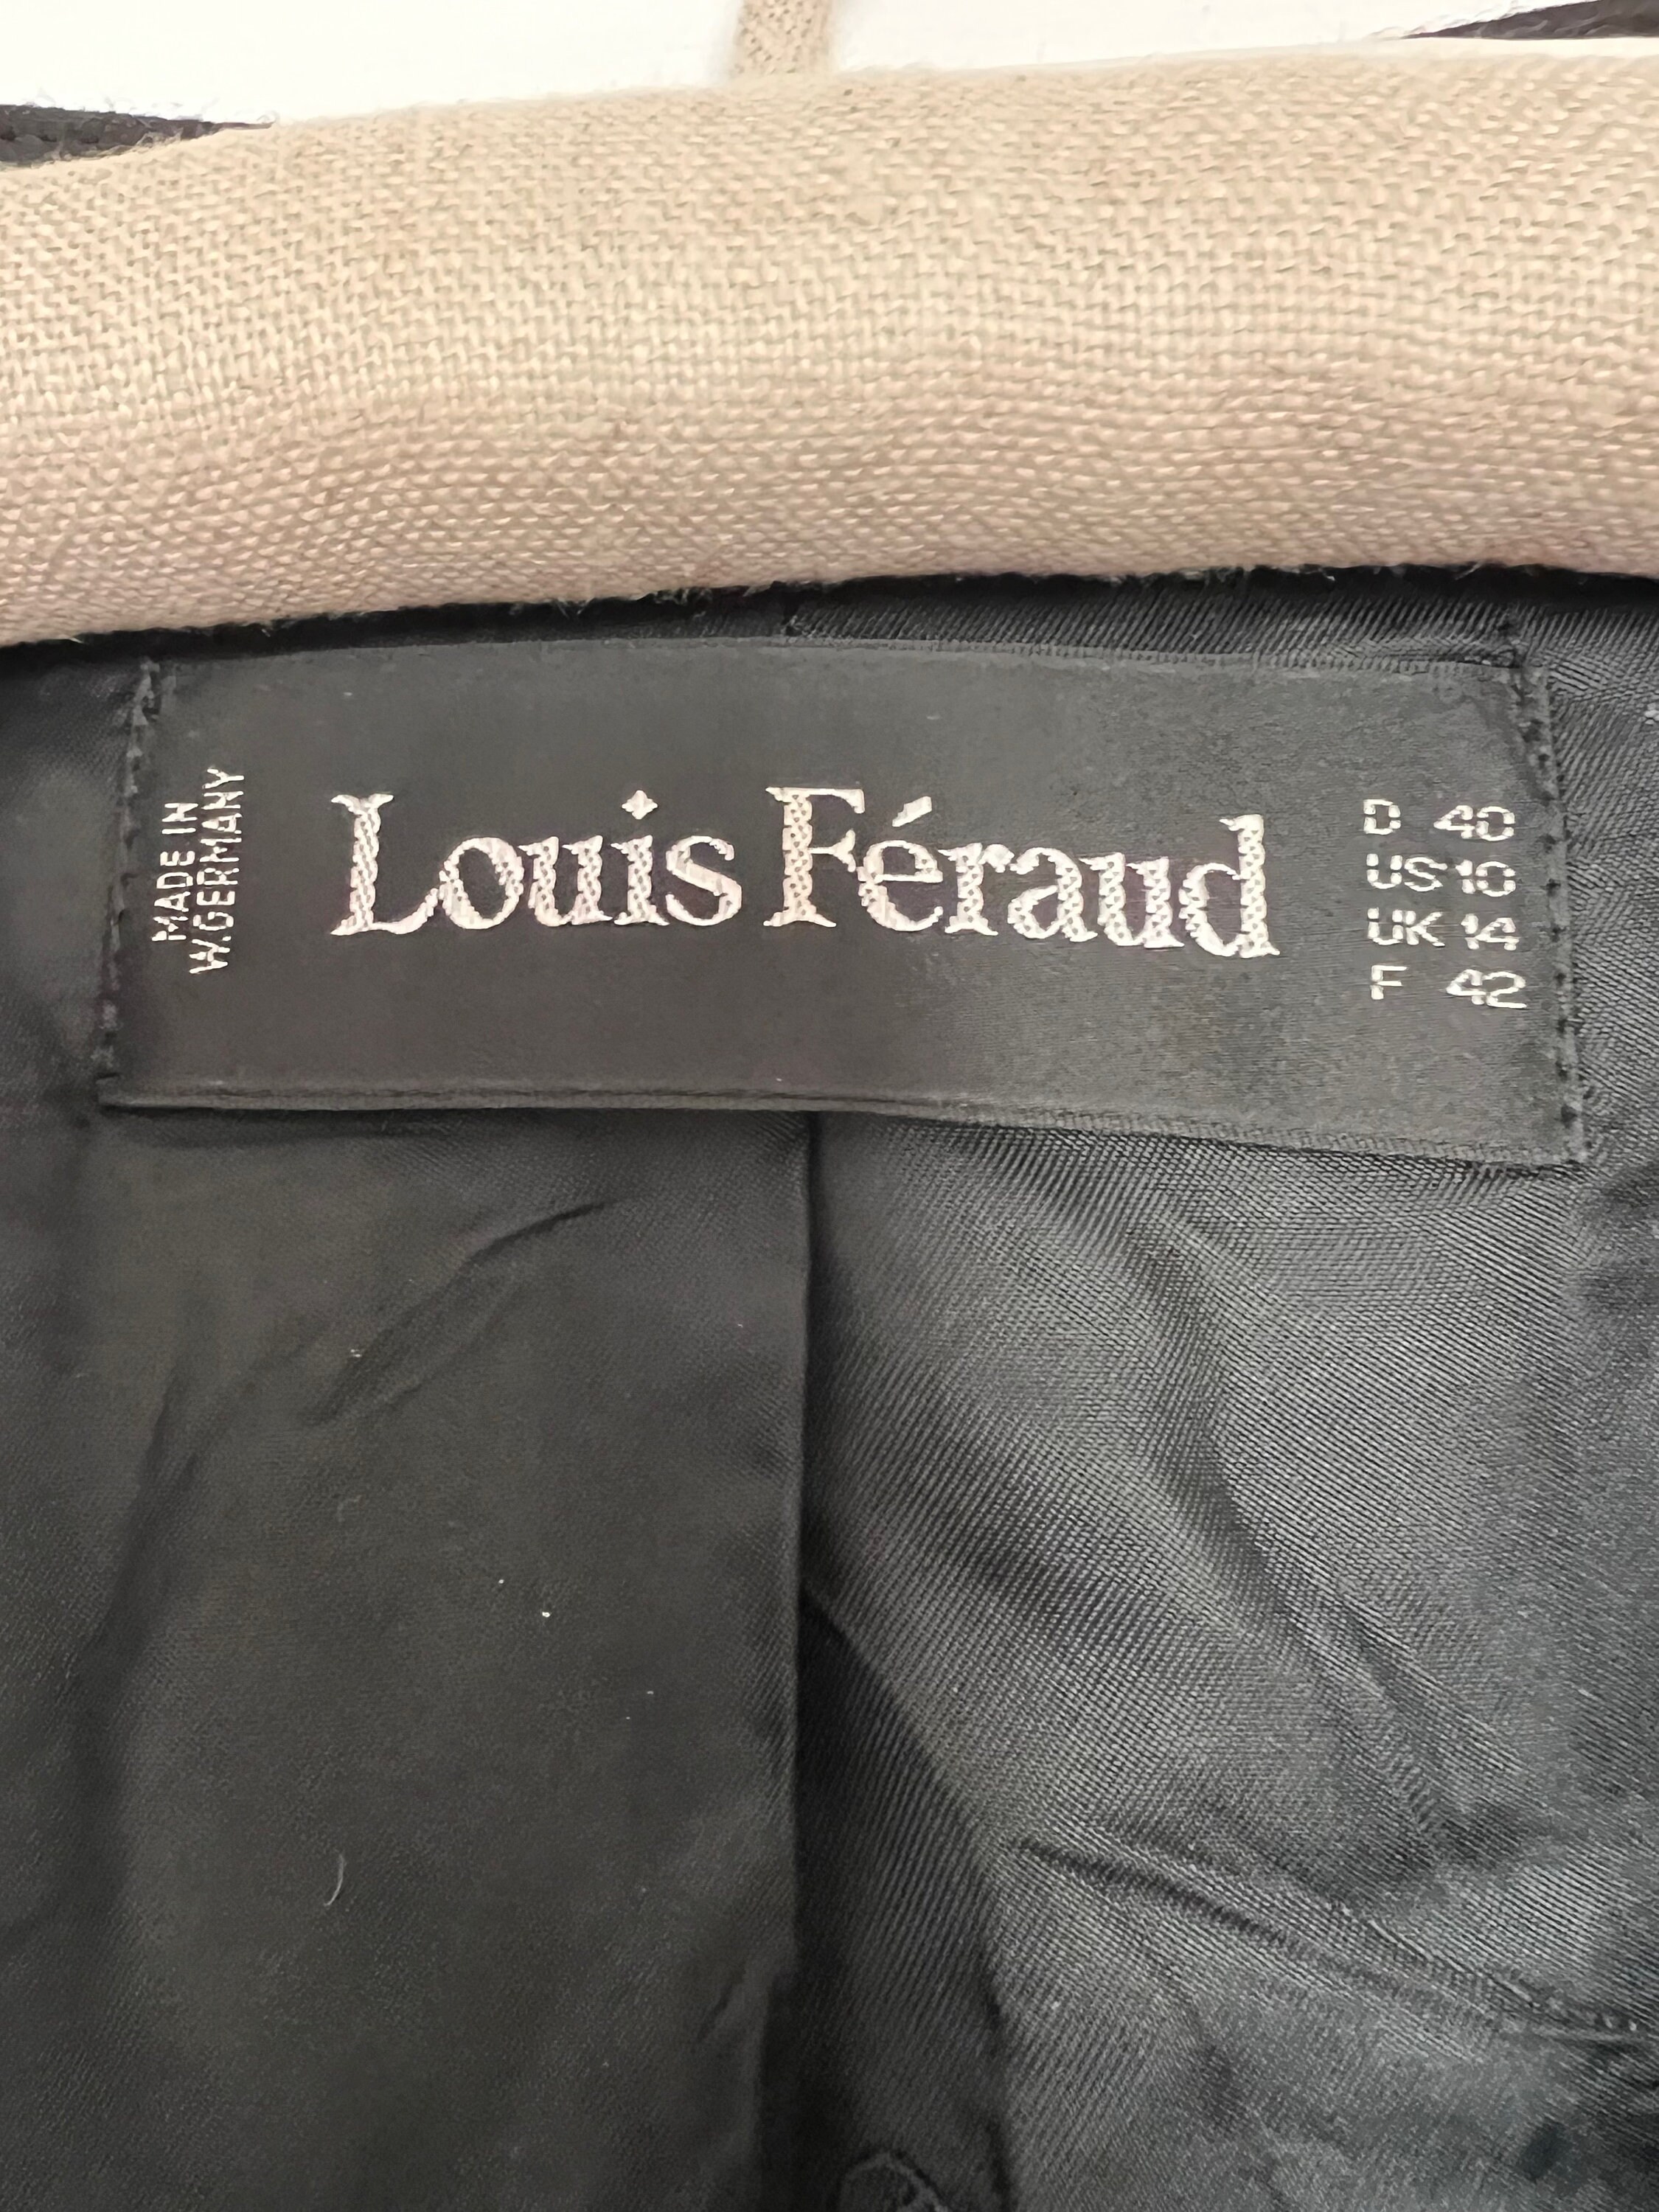 Louis feraud authentic handbag uk